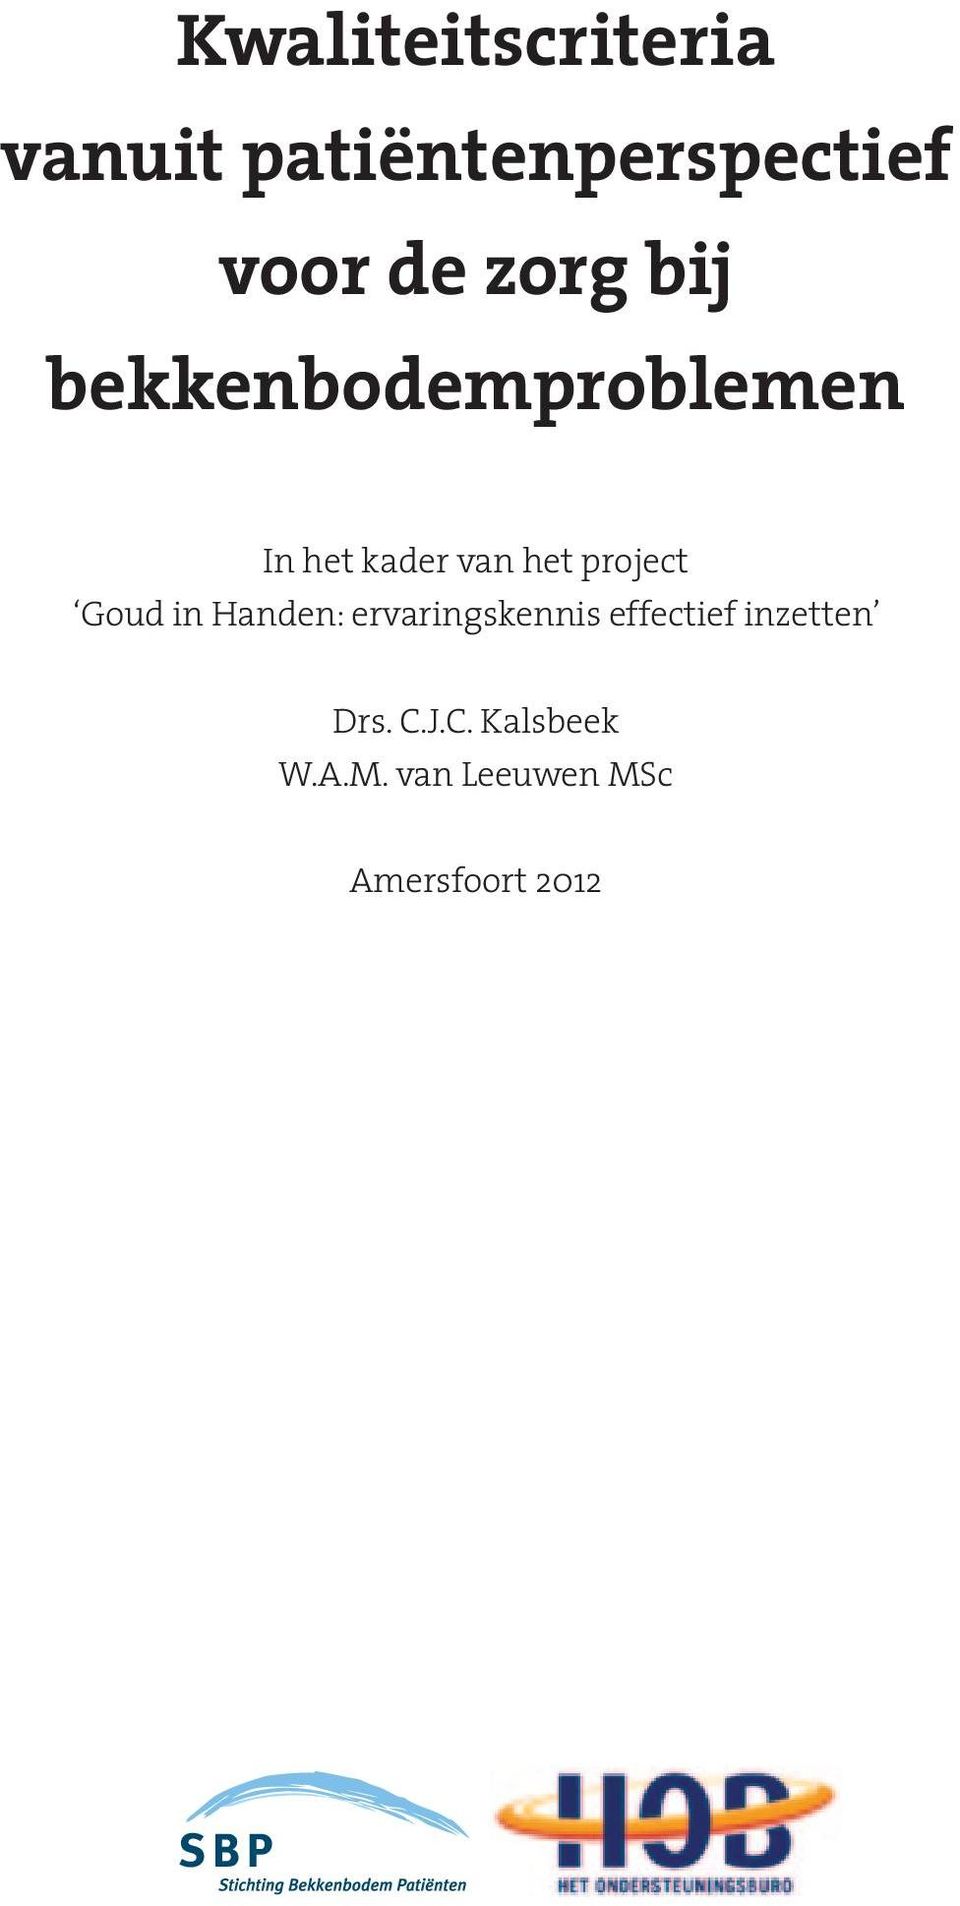 project Goud in Handen: ervaringskennis effectief